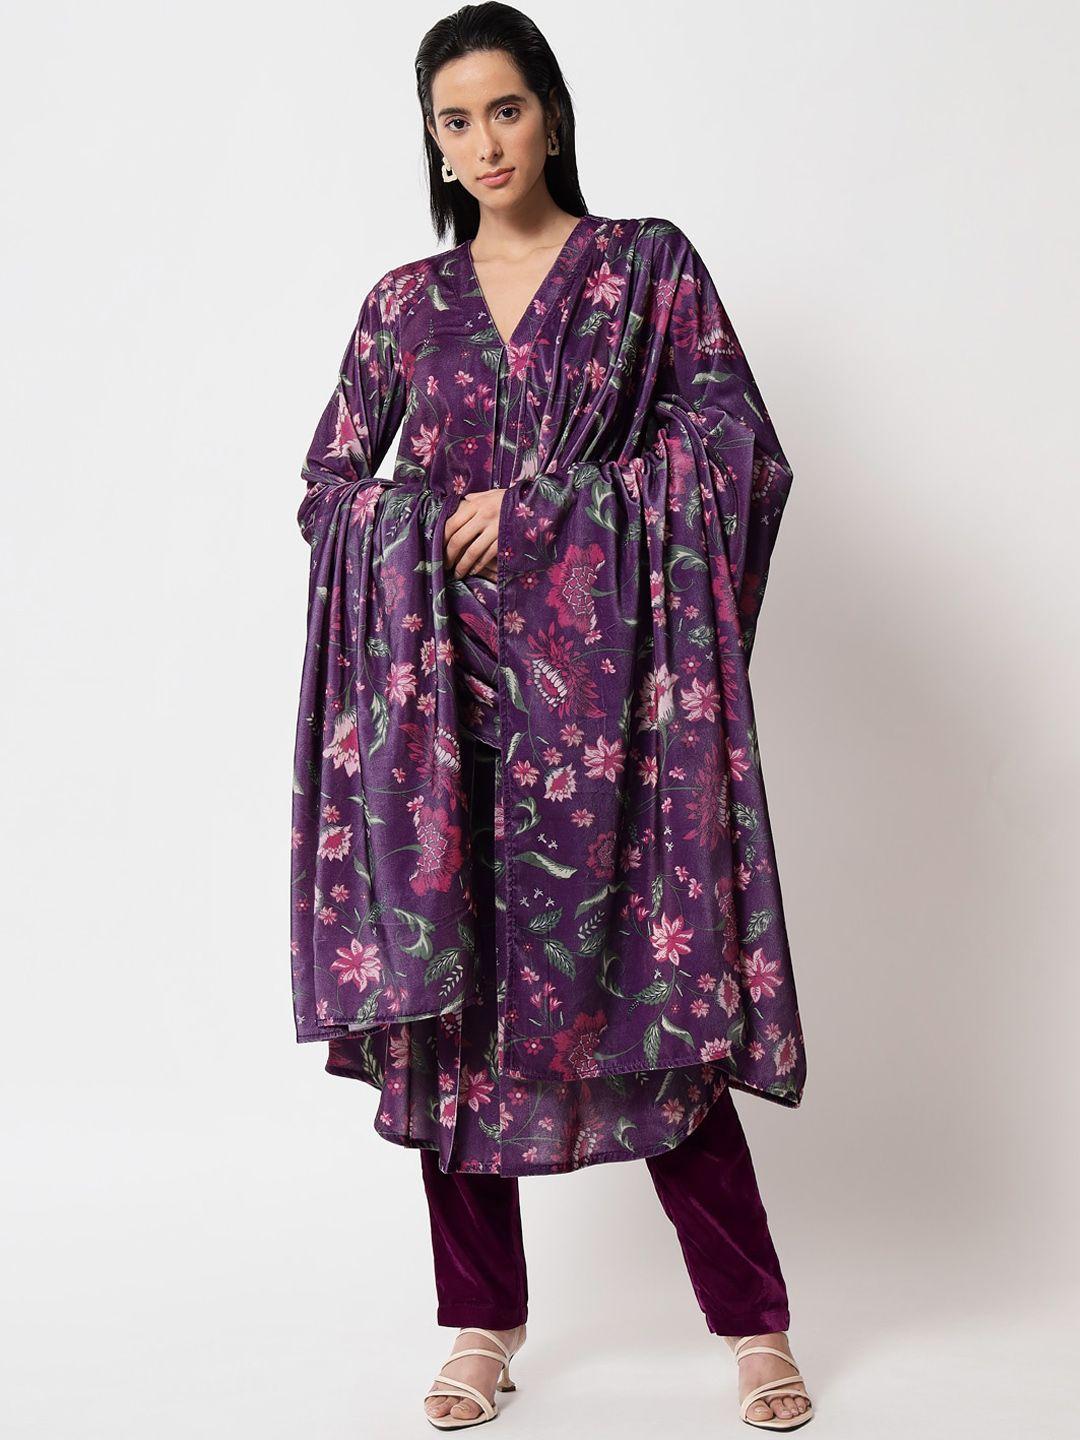 truebrowns women purple floral printed velvet shawl